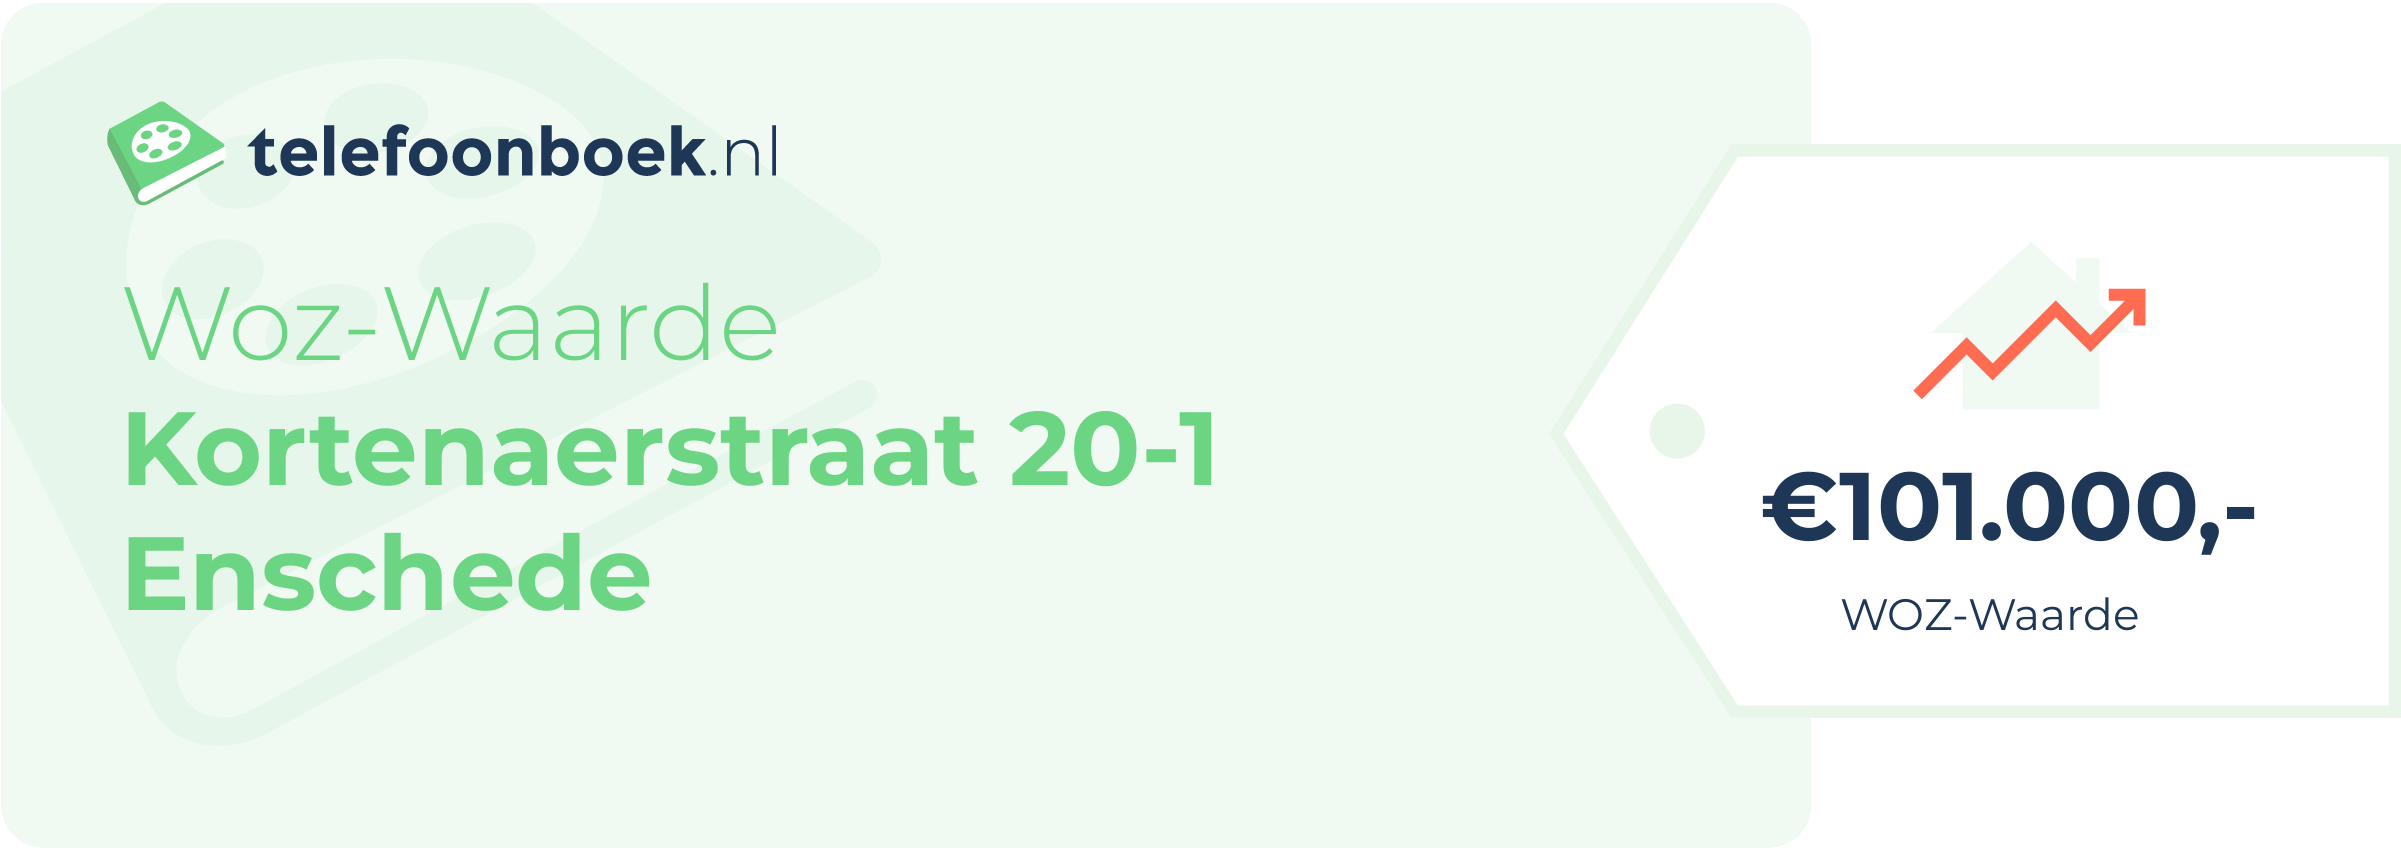 WOZ-waarde Kortenaerstraat 20-1 Enschede